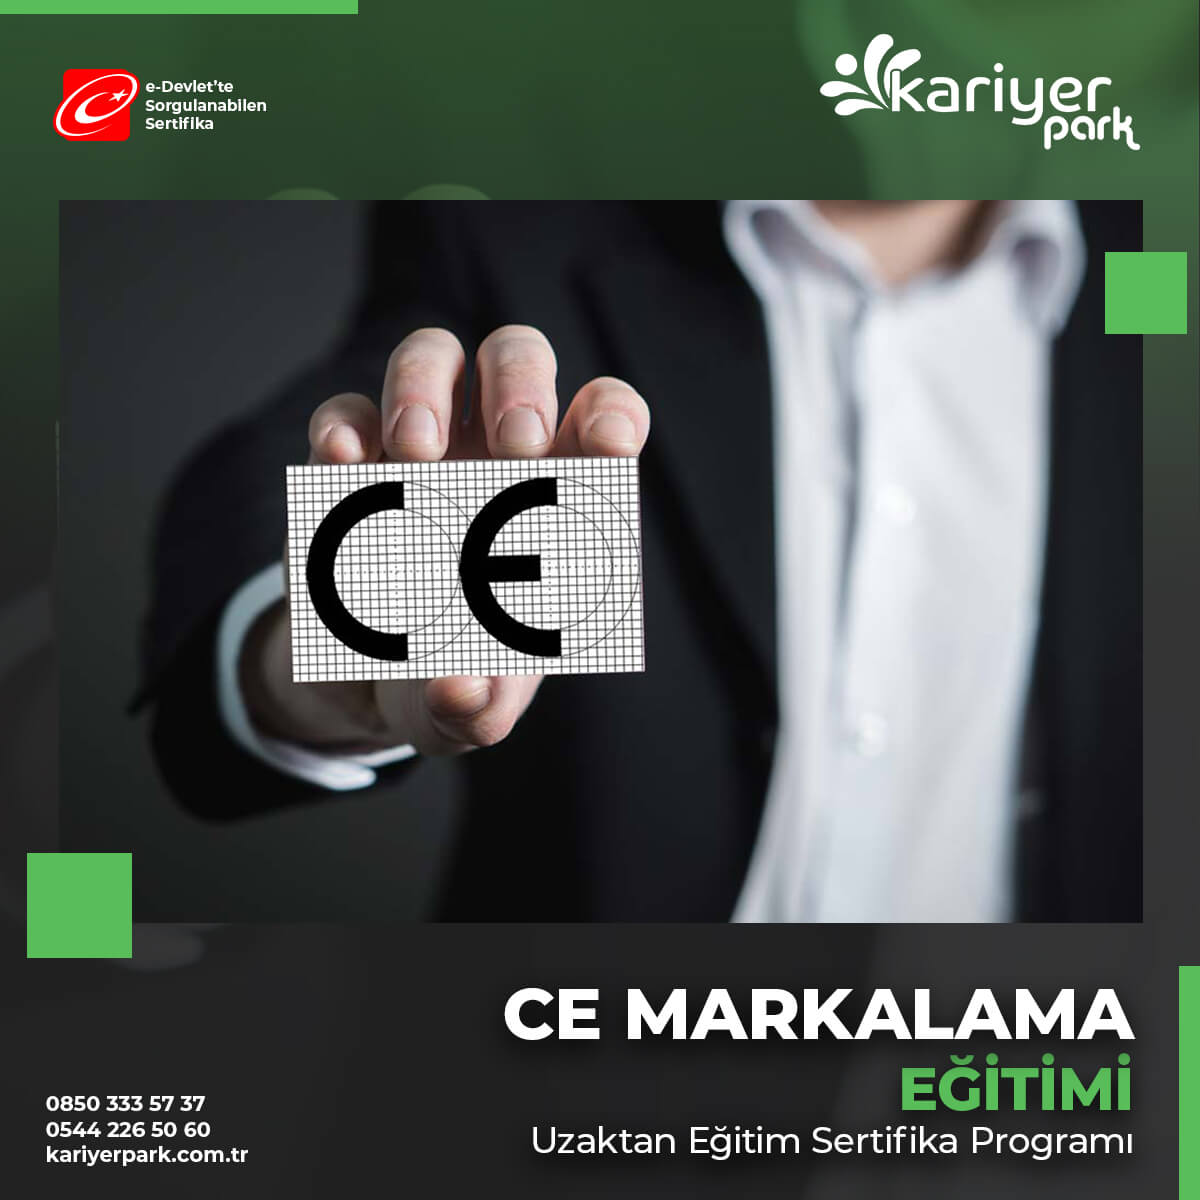 CE Markalama eğitimi sertifika programında katılımcılara CE Markalama Mevzuatı ve uygulanışına yönelik bilgi paylaşımı yapılacaktır.